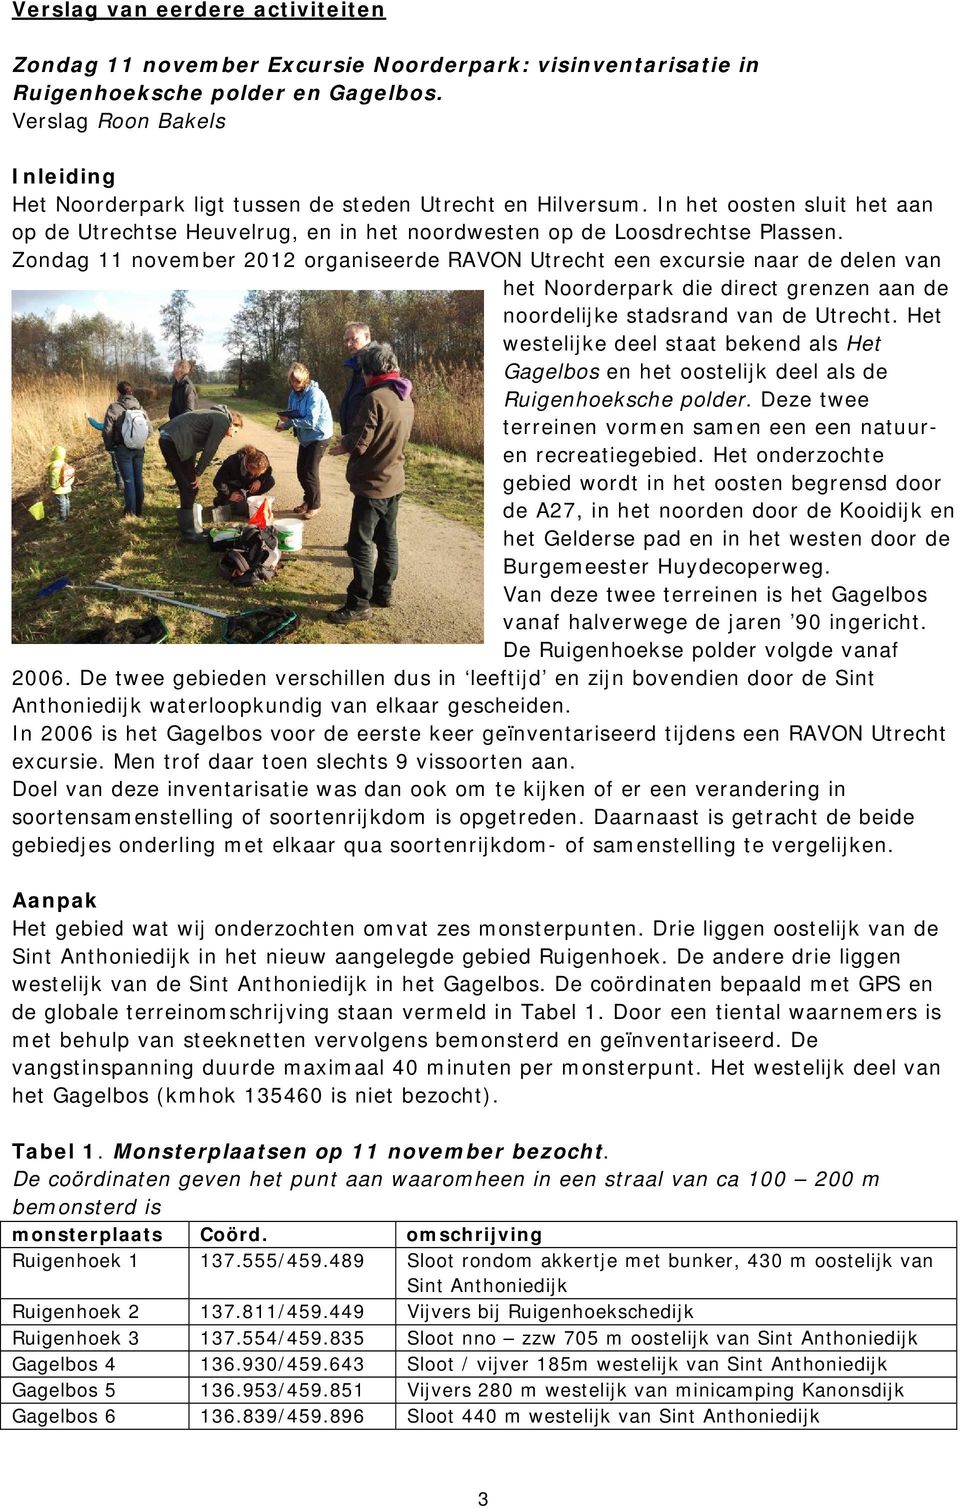 Zondag 11 november 2012 organiseerde RAVON Utrecht een excursie naar de delen van het Noorderpark die direct grenzen aan de noordelijke stadsrand van de Utrecht.